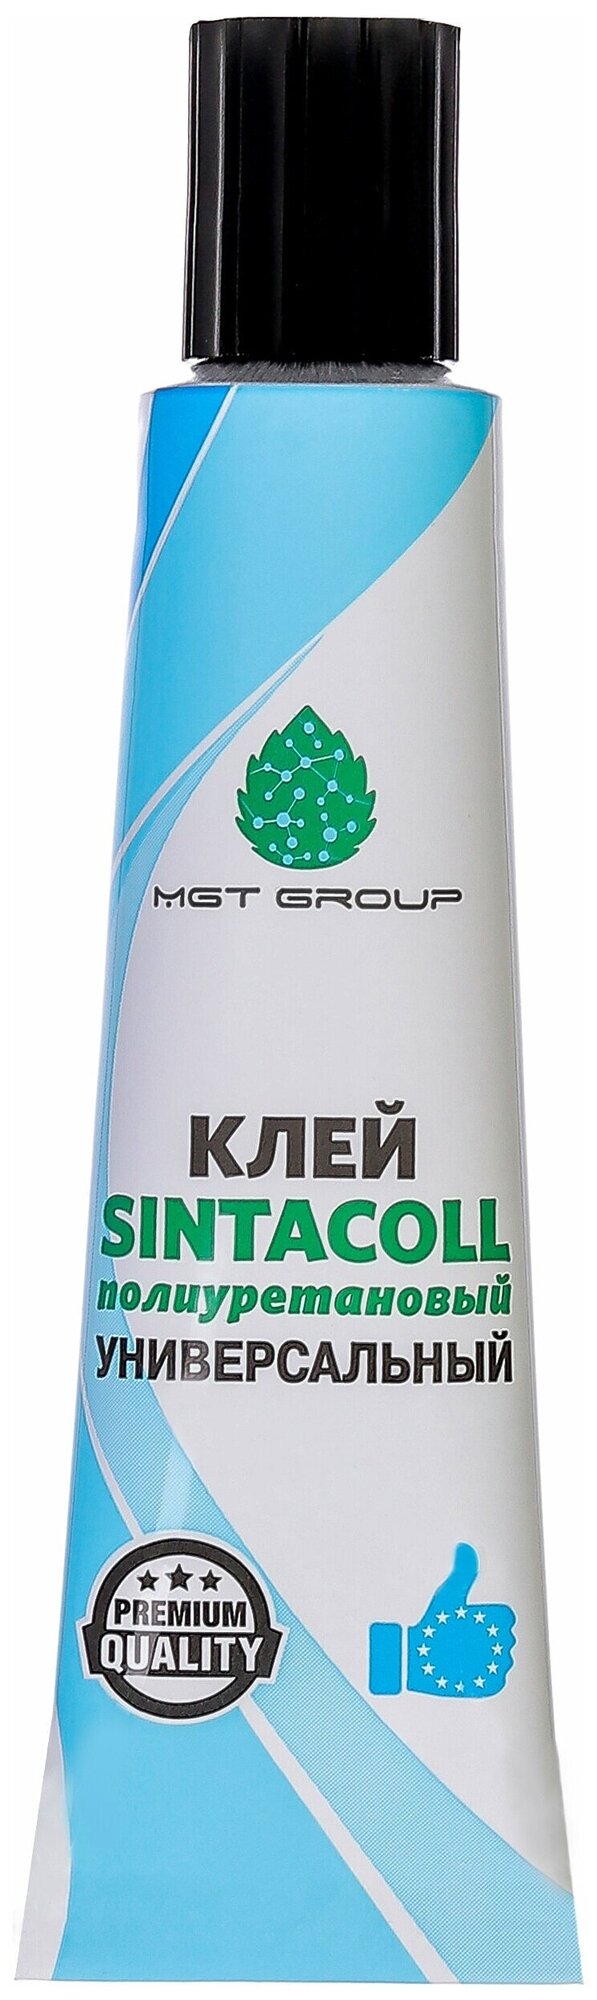 Универсальный MGT Group Sintacoll полиуретановый